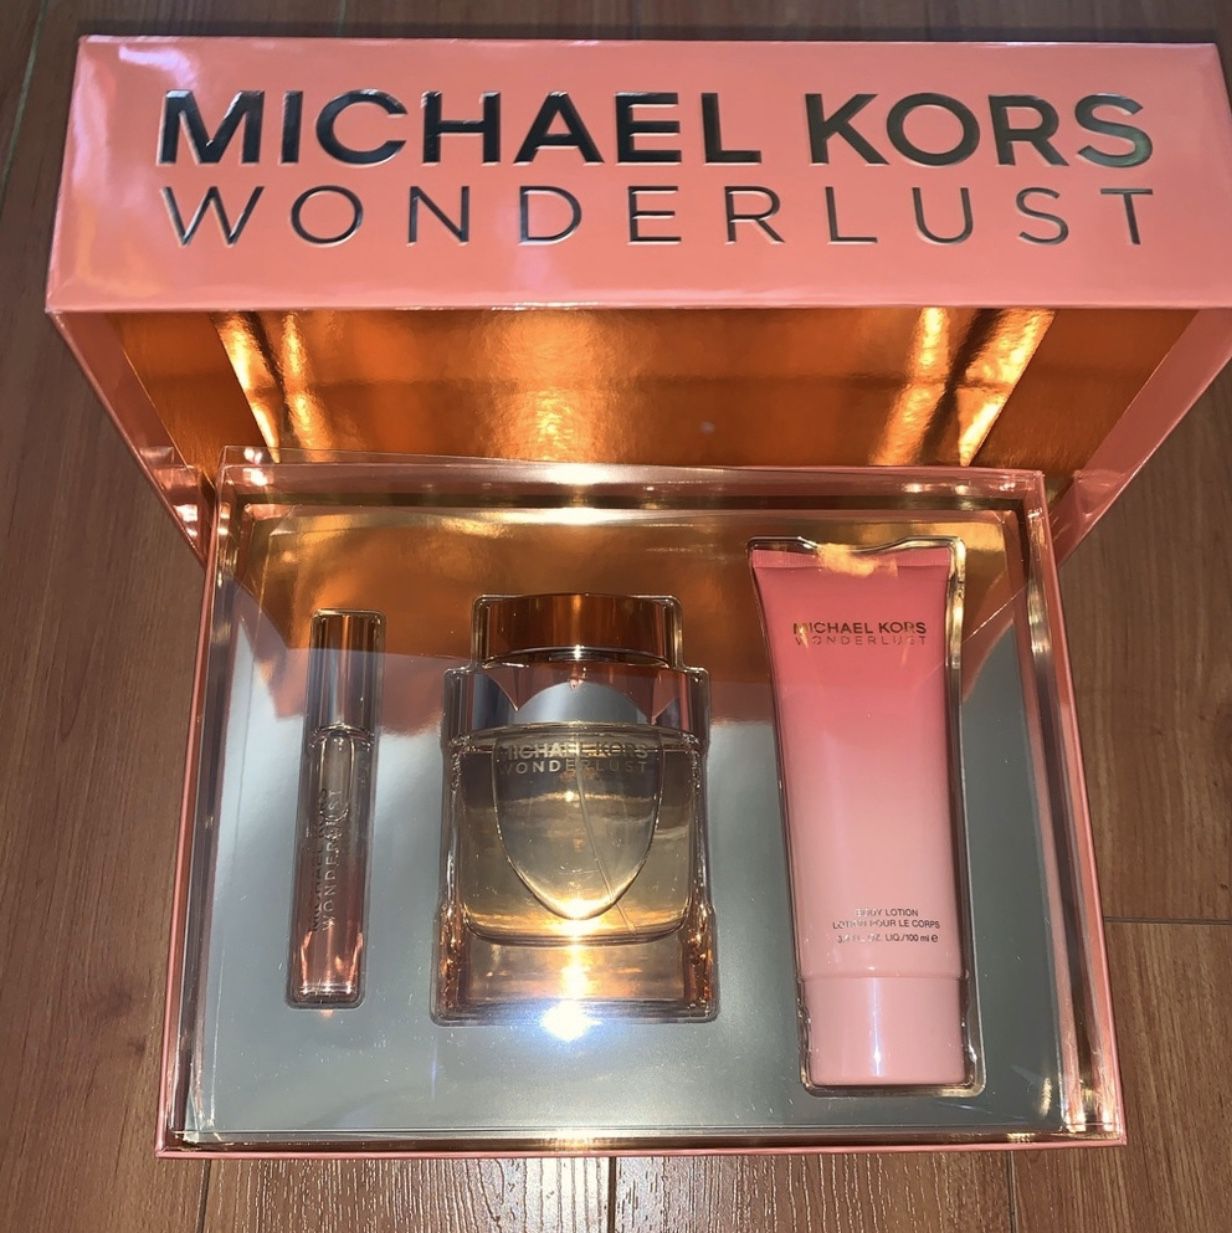 Michael Kors Wonderlust Fragrance Gift art